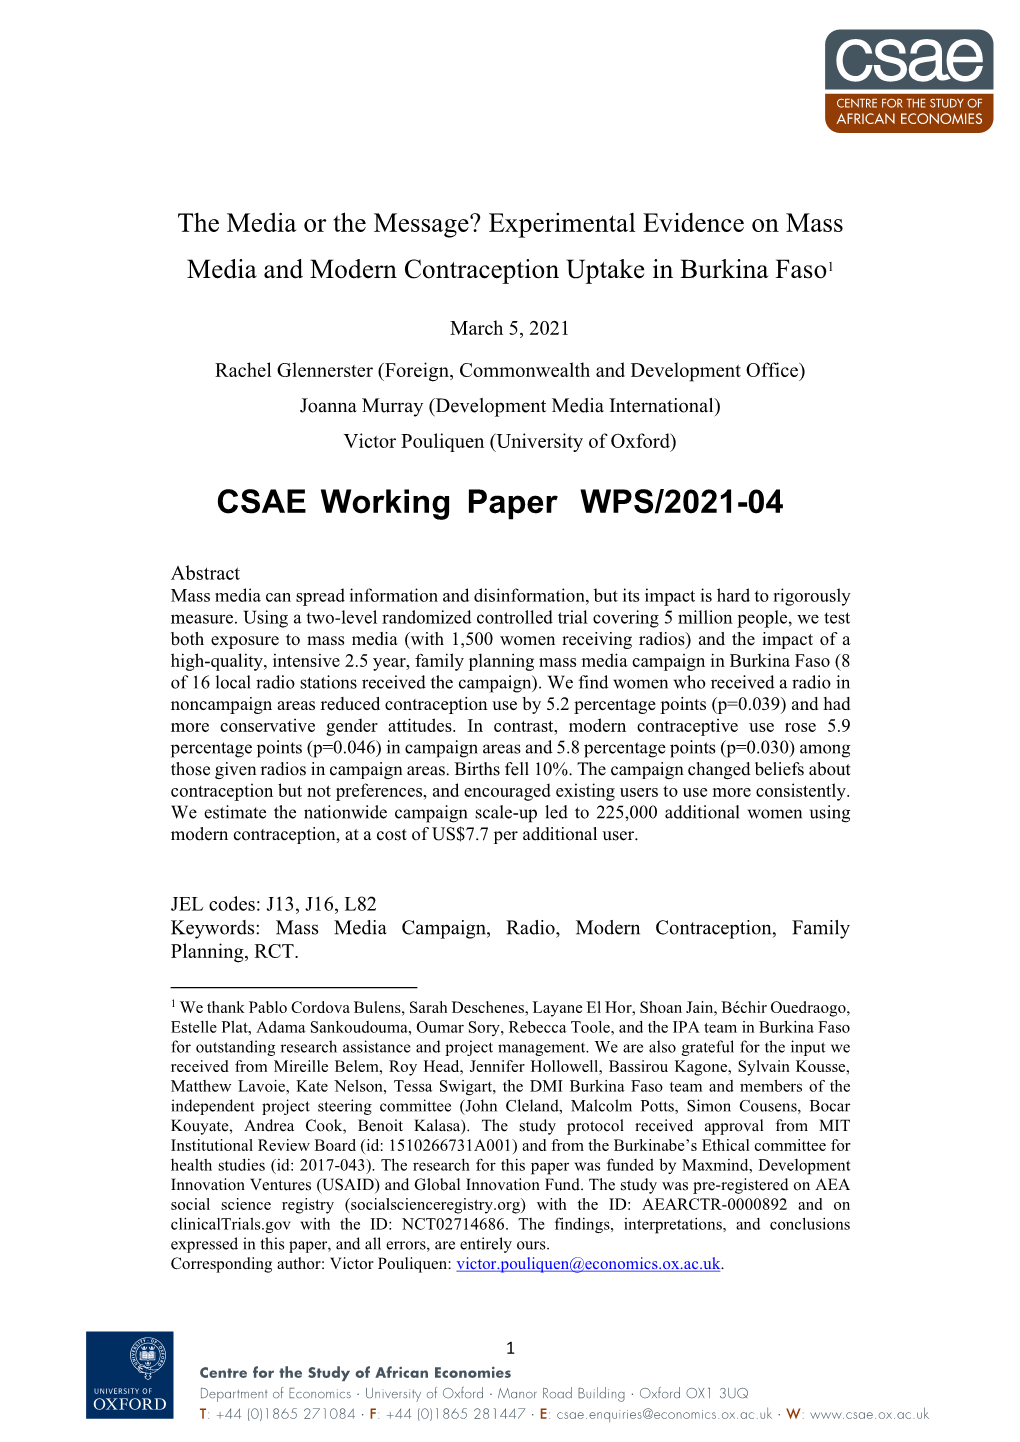 CSAE Working Paper WPS/2021-04